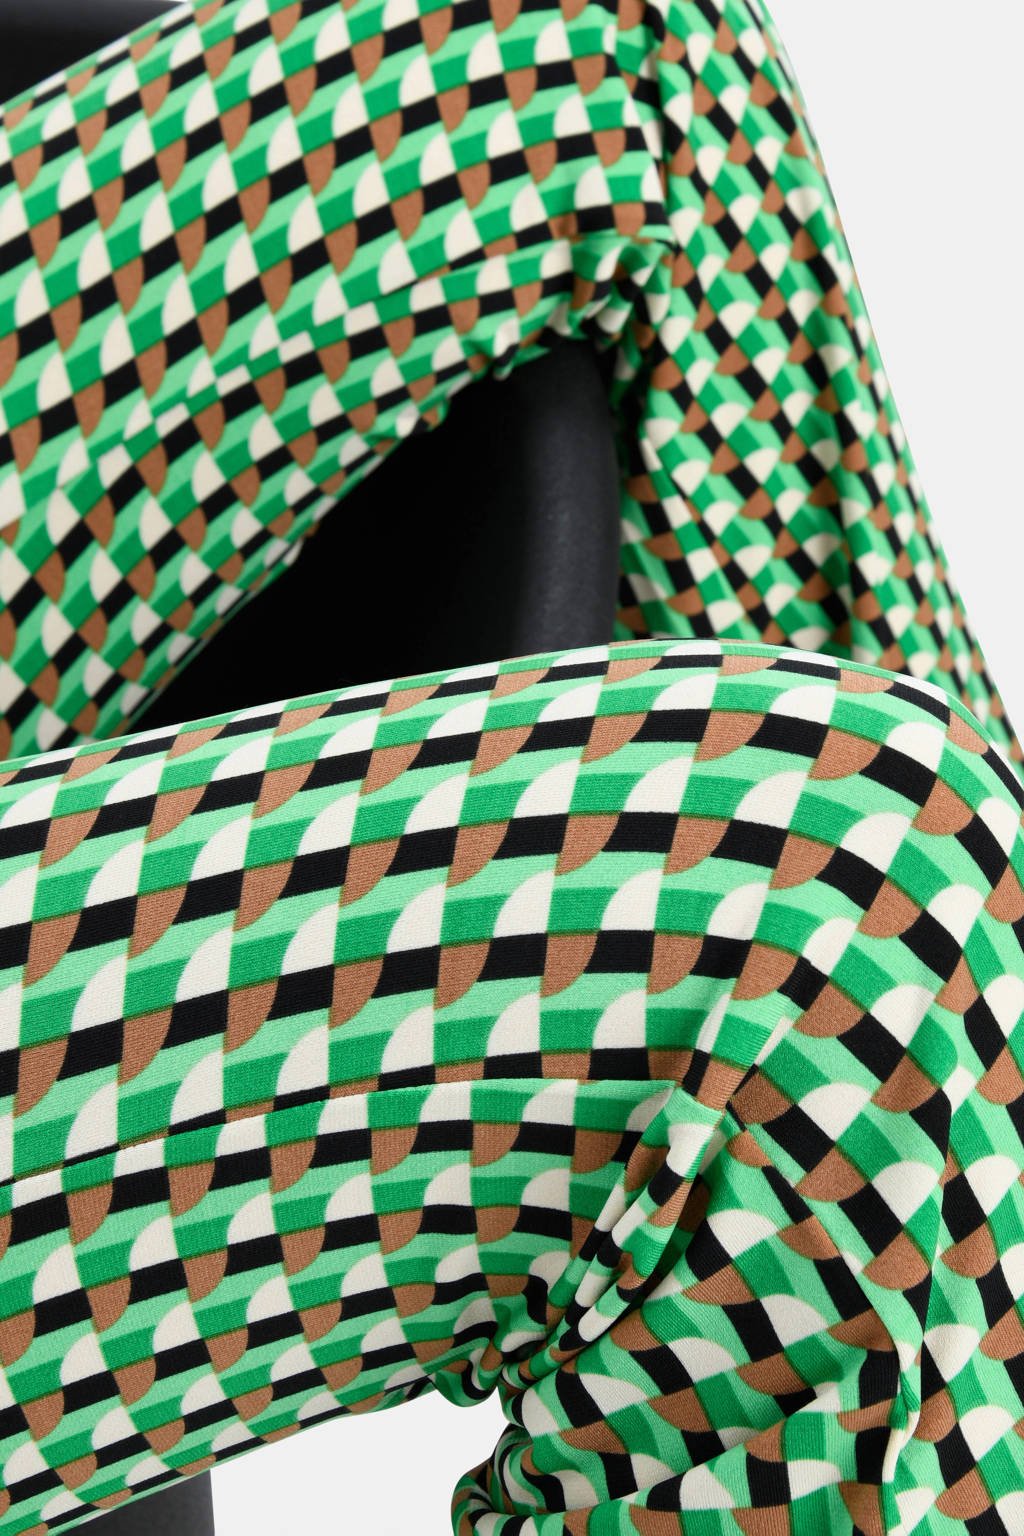 Shoeby Eksept high waist flared broek Retro met grafische print groen/bruin/zwart/gebroken | wehkamp